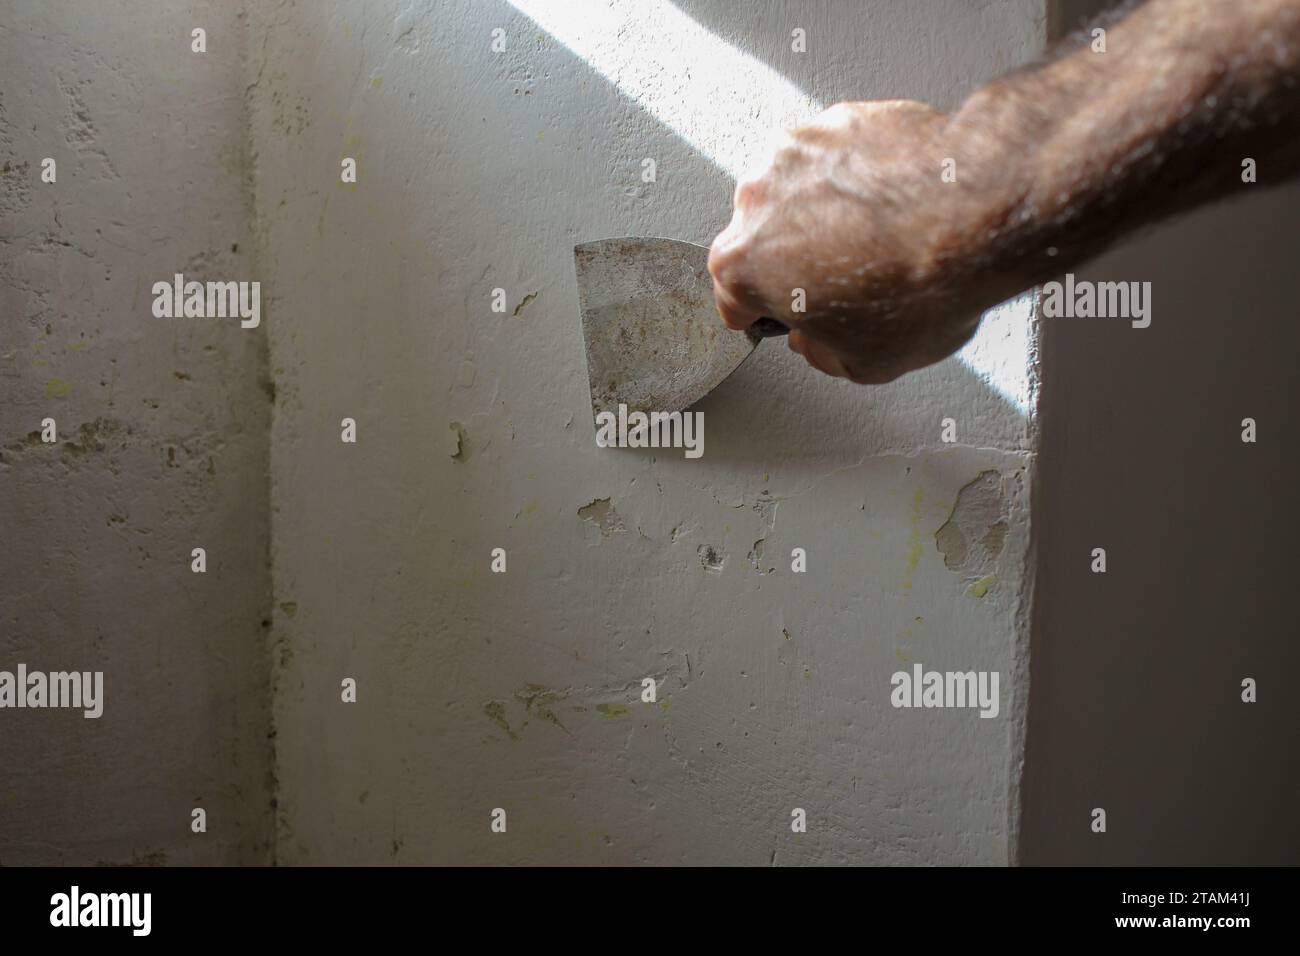 Prima del pennello: Mano con guanti utilizzando la spatola per preparare la superficie della parete Foto Stock